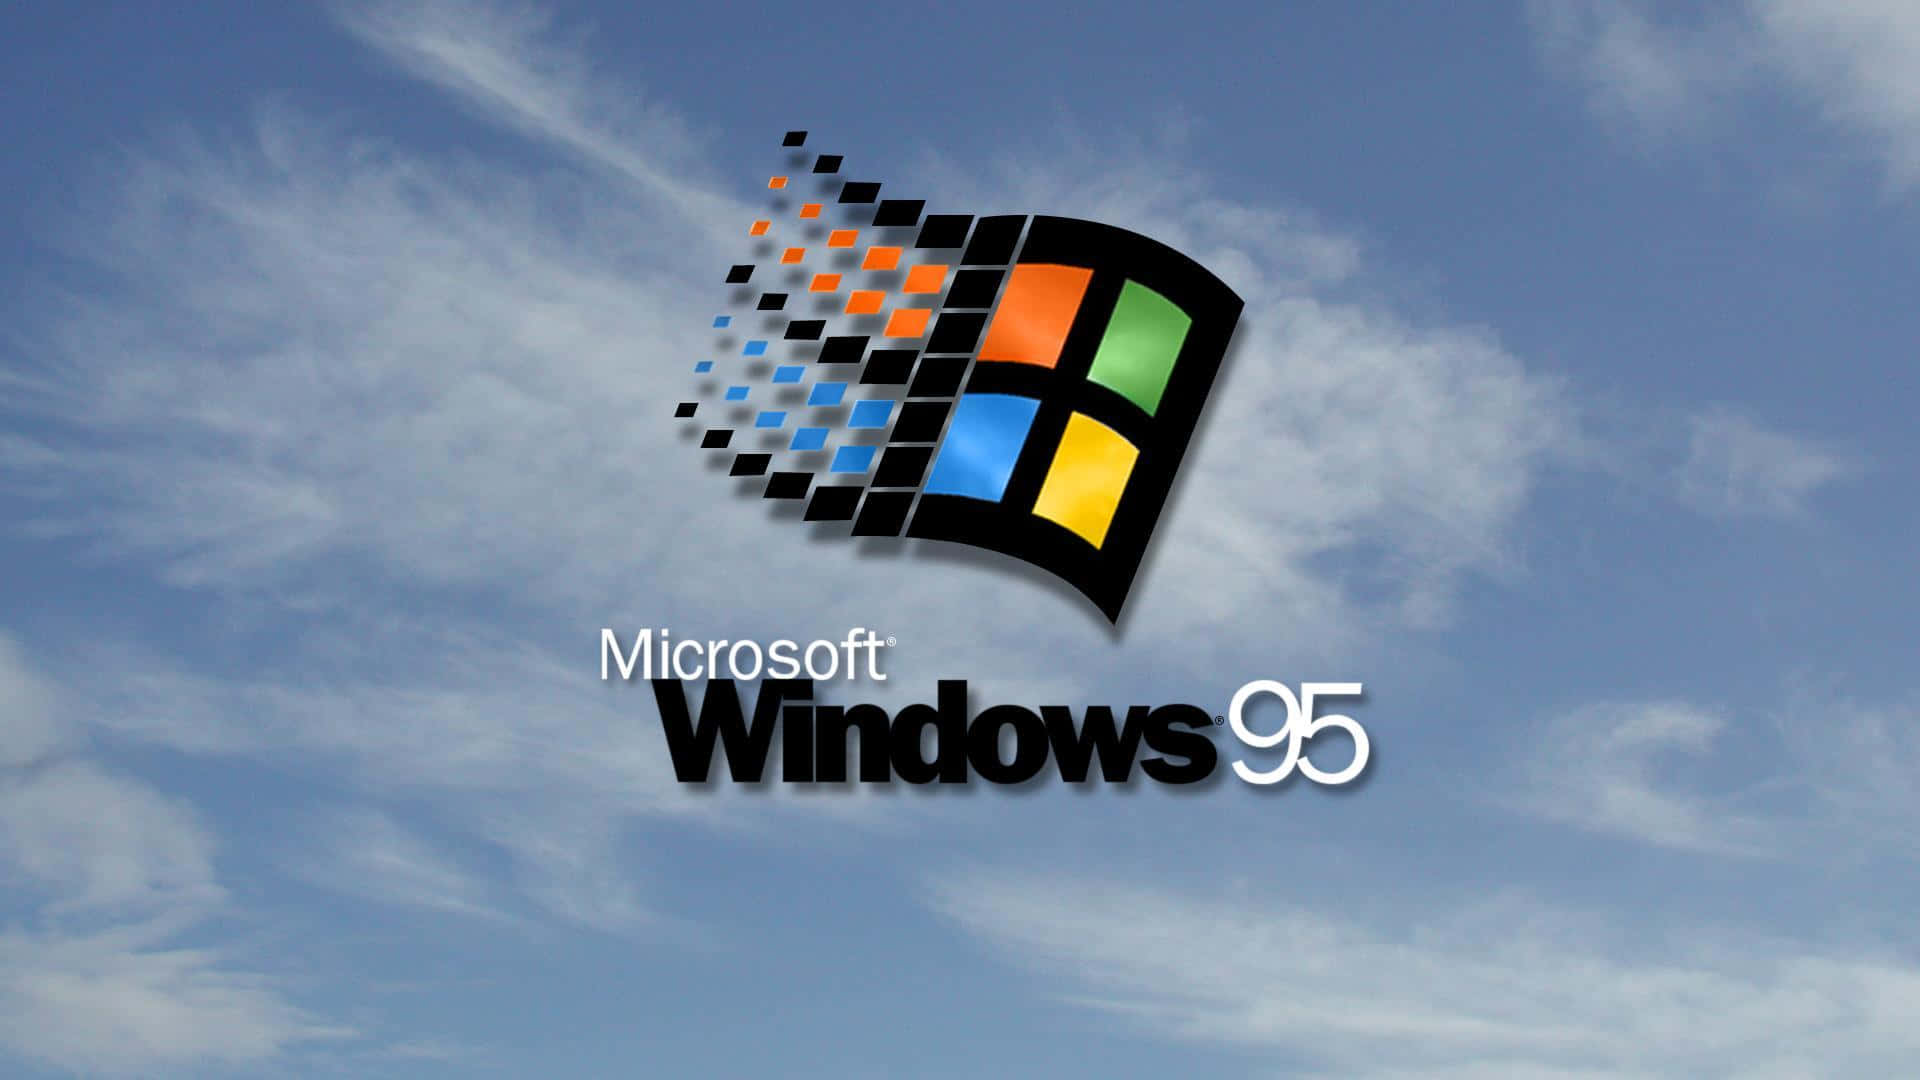 Interactuandocon El Mundo Conocido: Adéntrate En El Legado De Windows 98.